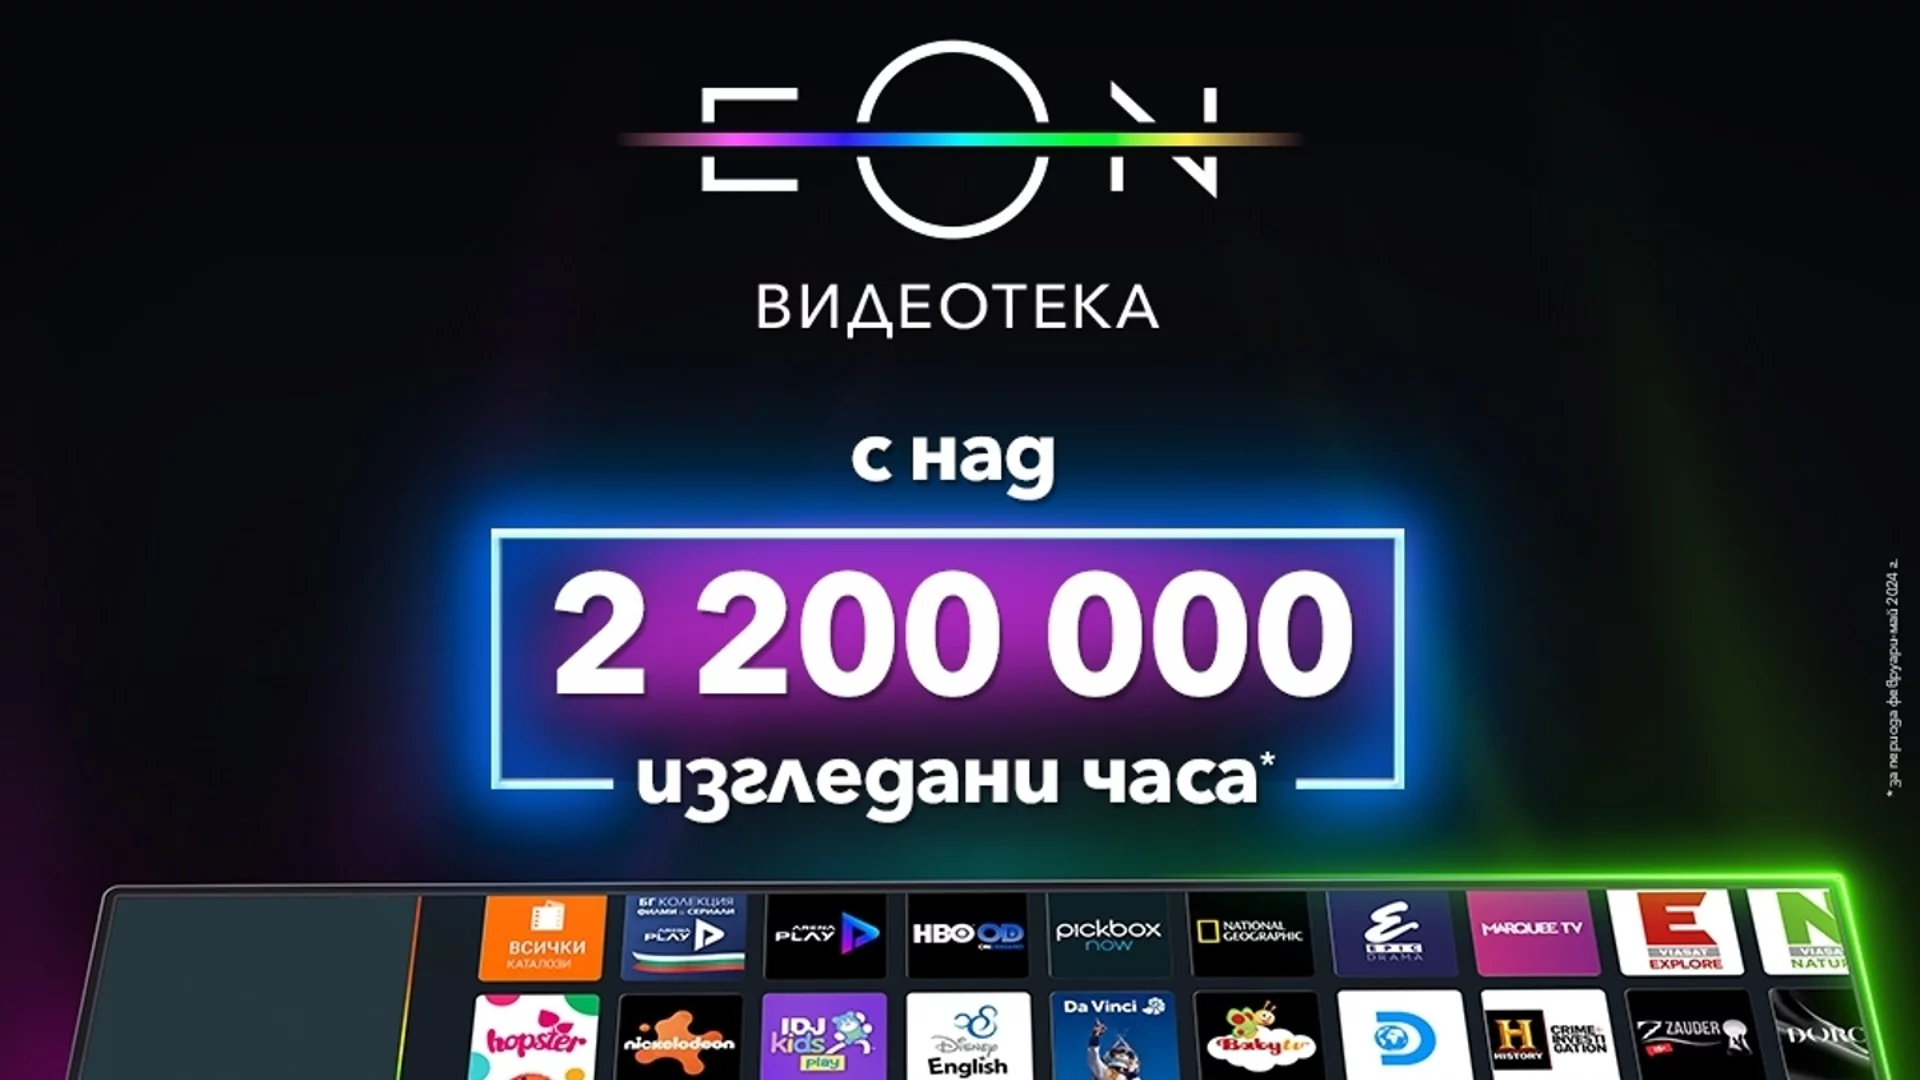 Над 2 200 000 часа са гледни в обновената EON Видеотека на Vivacom